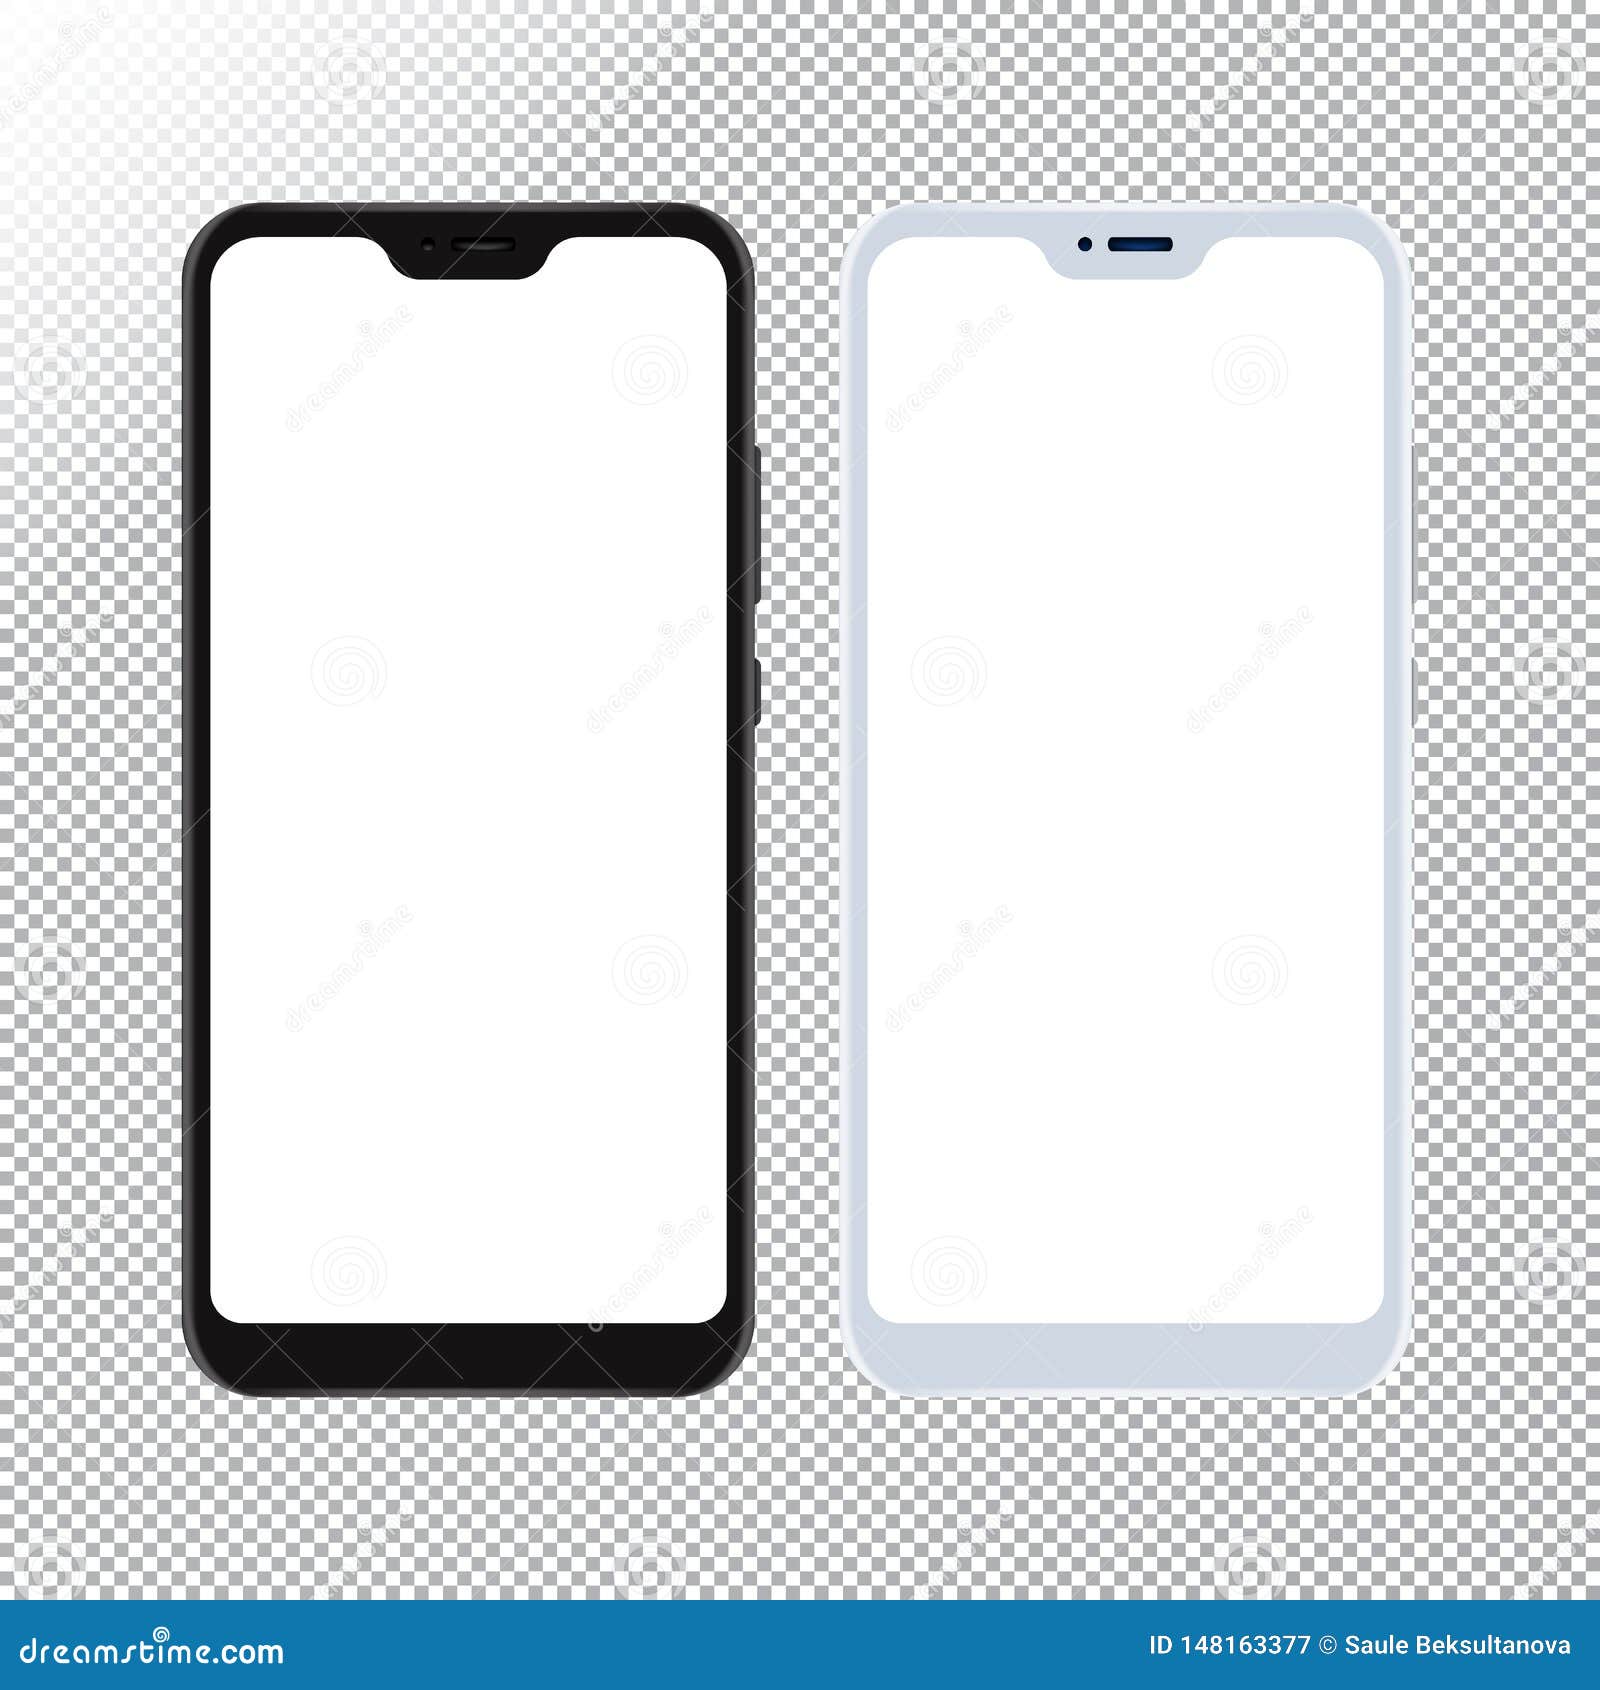 Bạn muốn có một ảnh đẹp mắt về điện thoại thông minh để sử dụng trong các dự án thiết kế của mình? Bộ sưu tập Vector điện thoại di động mô phỏng trên nền trong suốt sẽ là sự lựa chọn tuyệt vời cho bạn. Màu trắng trong suốt của nền sẽ khiến chiếc điện thoại trở nên bắt mắt hơn bao giờ hết.